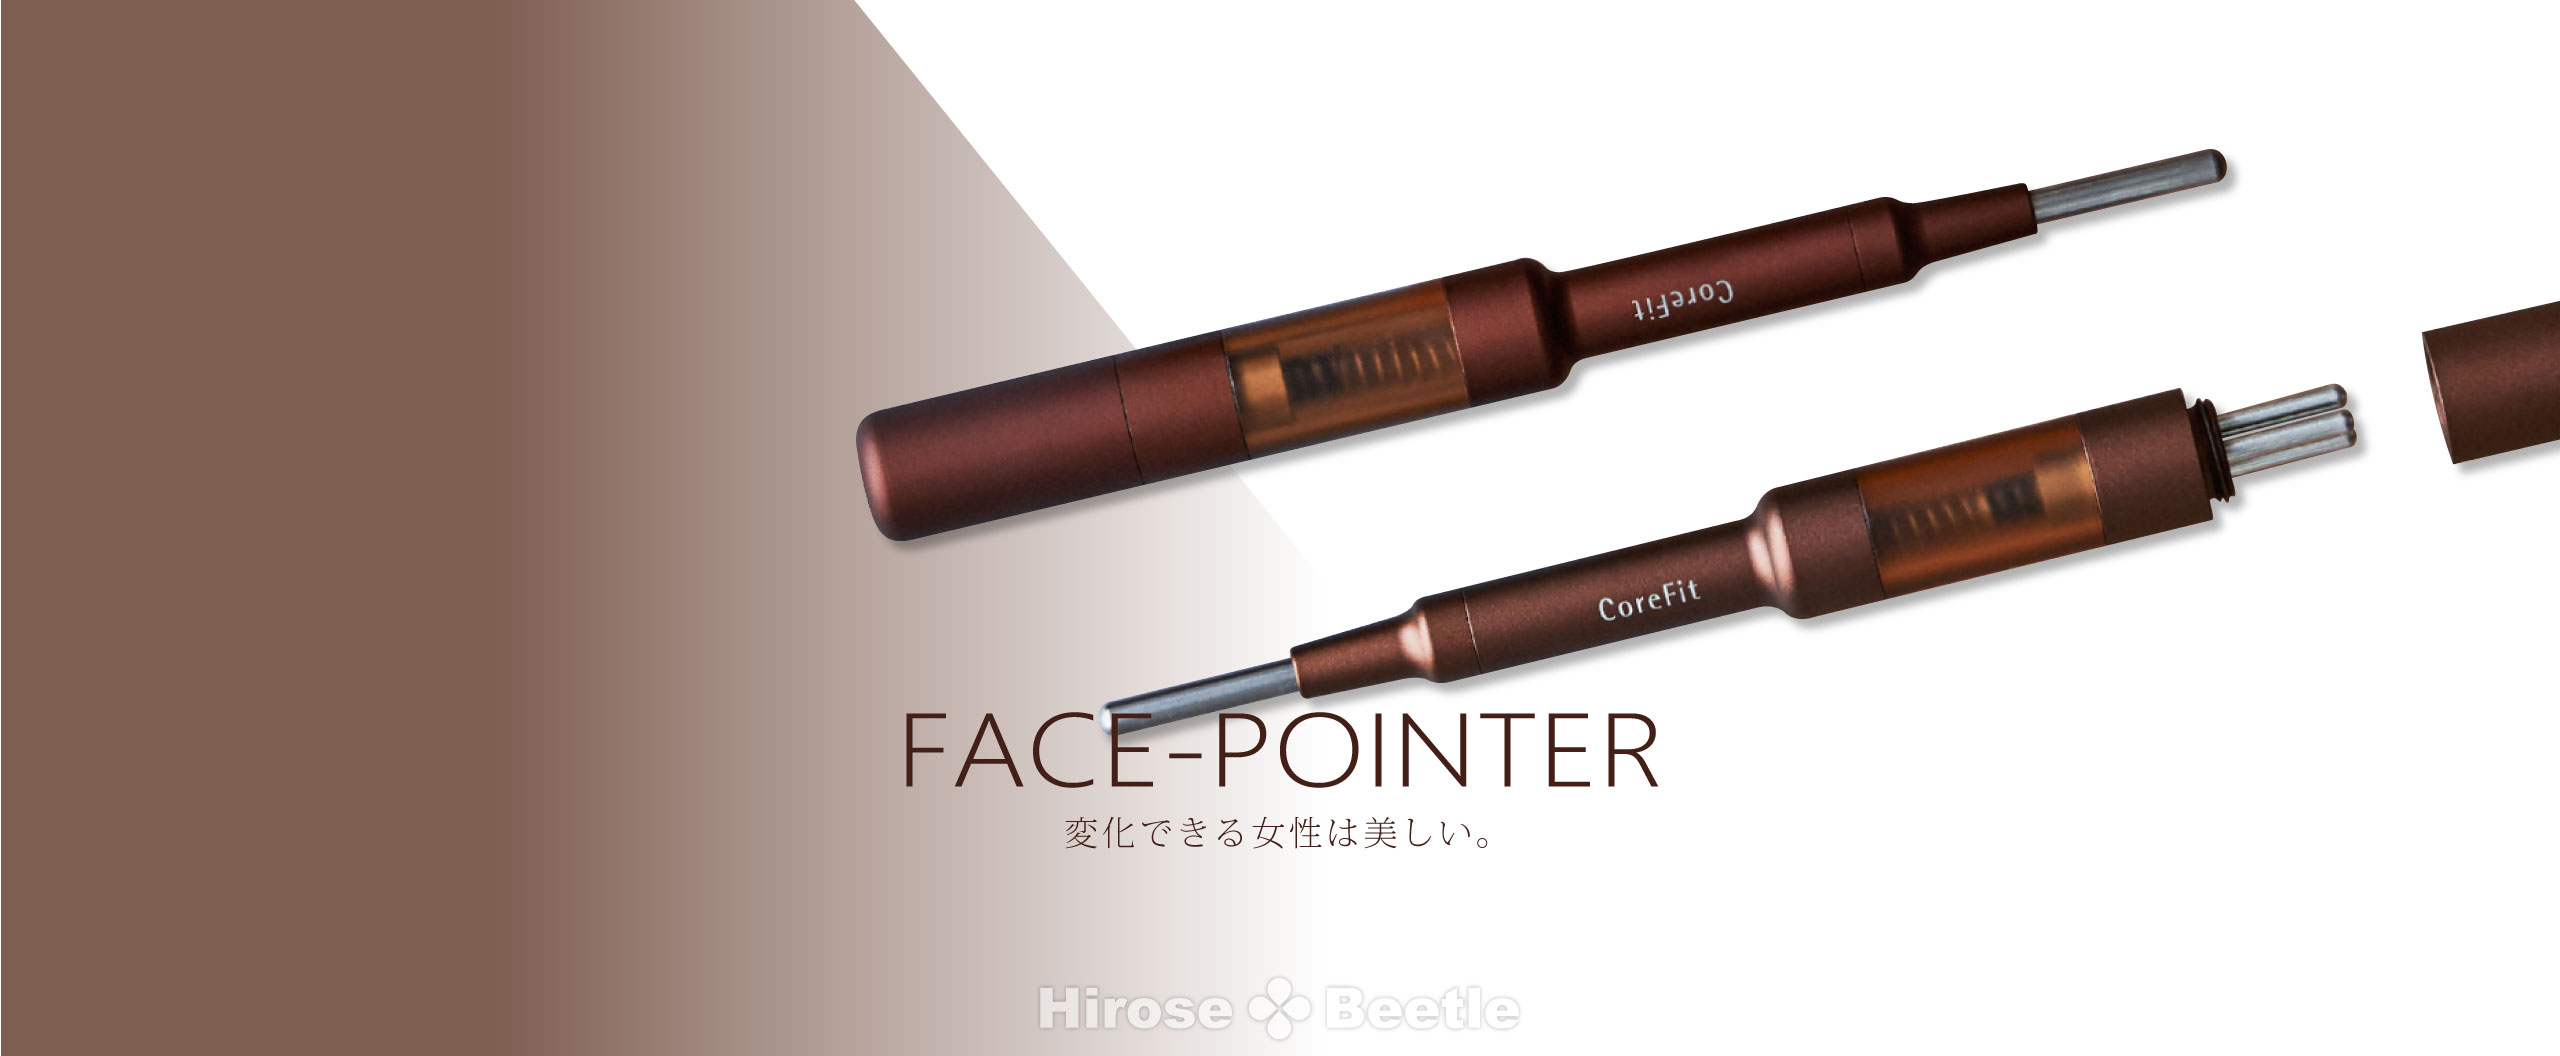 限定SALE CORE FIT Face-Pointer X0J3N-m83735581658 thinfilmtech.net